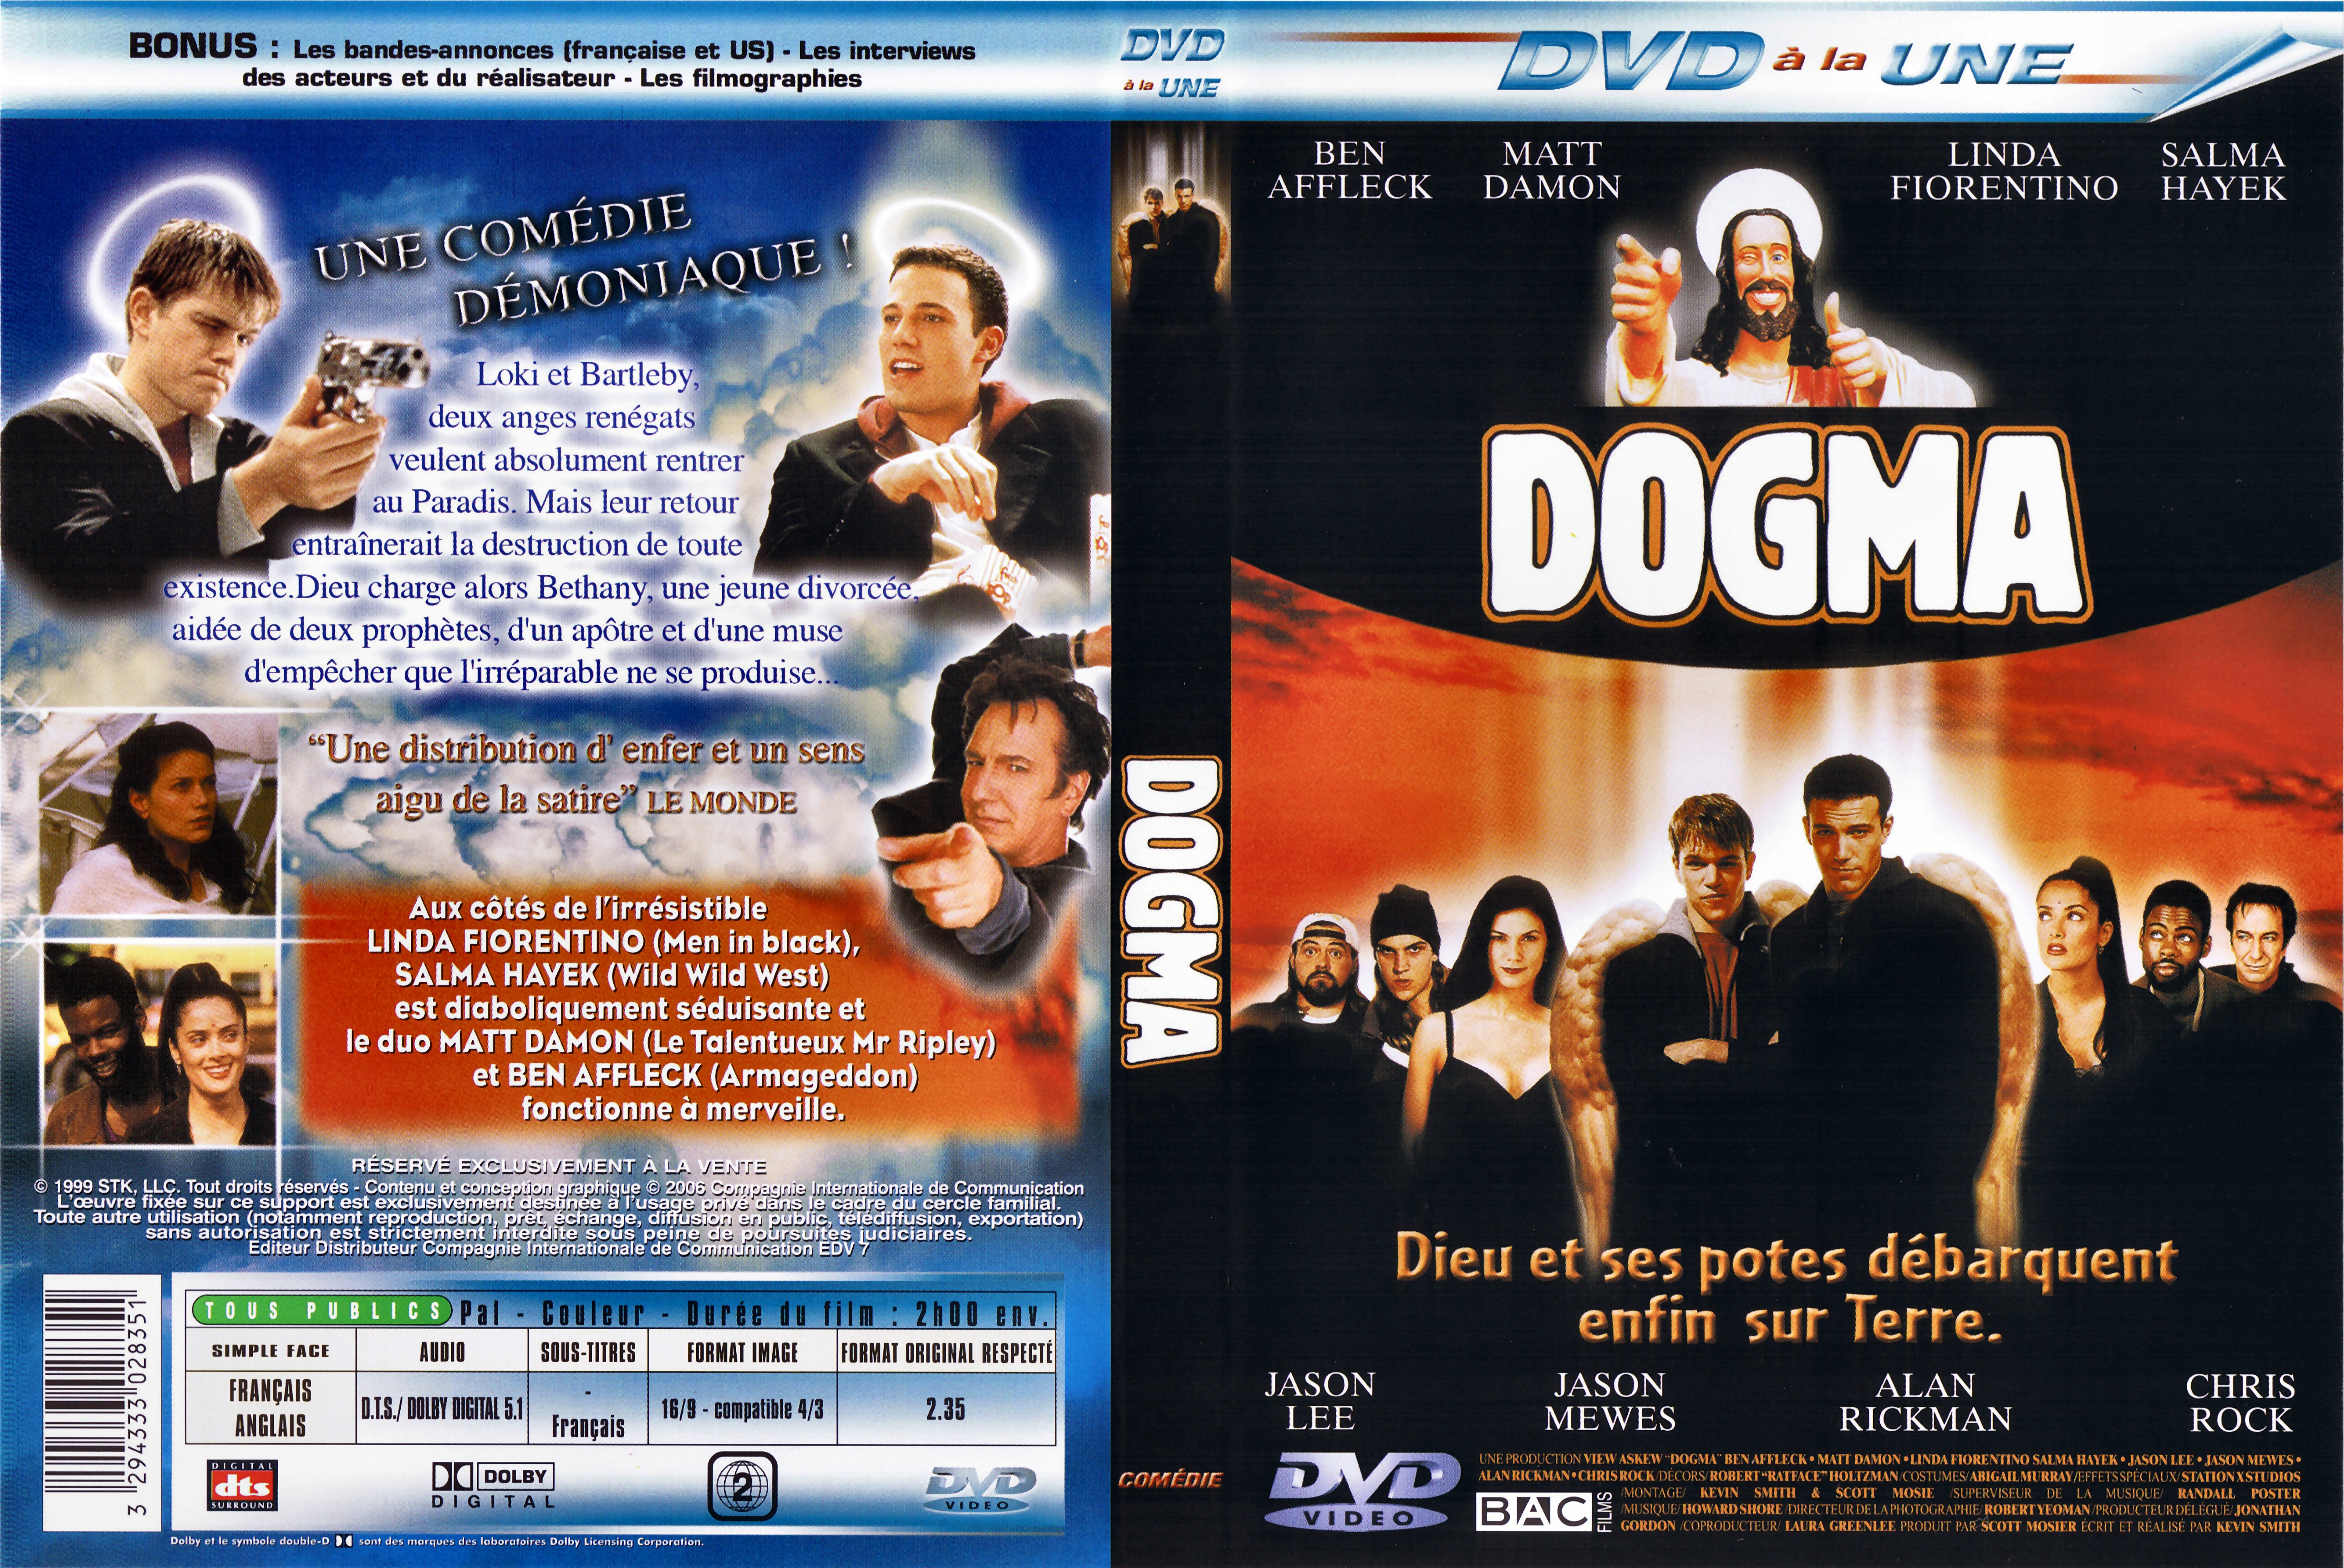 Jaquette DVD Dogma v2